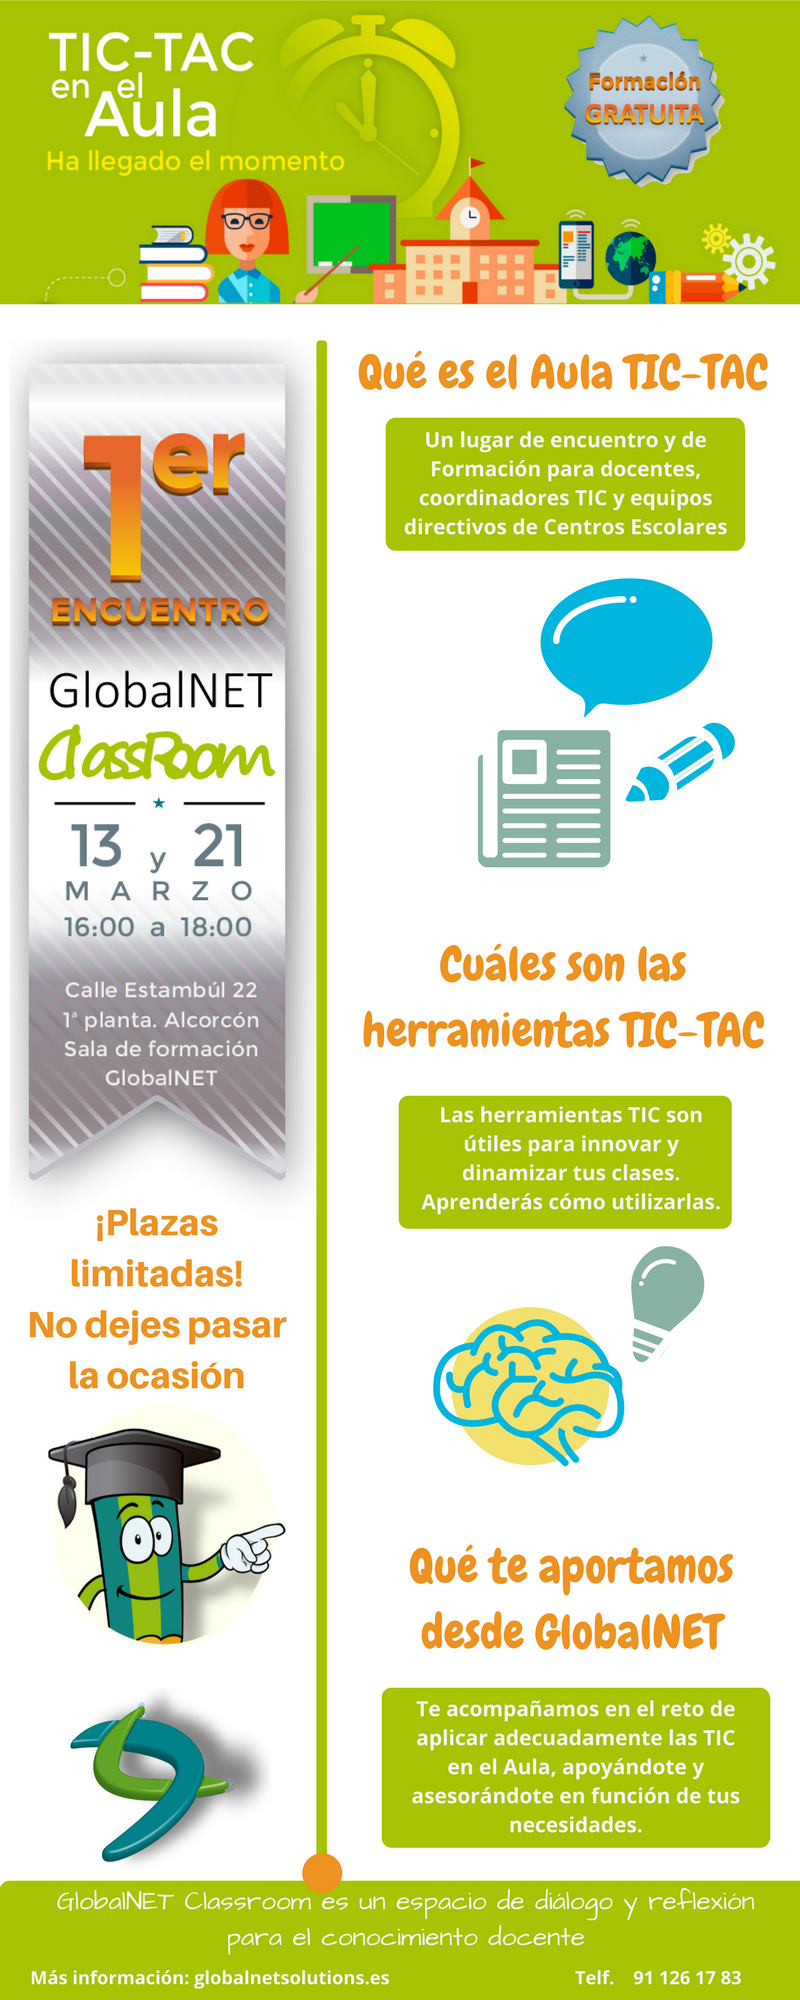 GNS Classroom - Aula TIC-TAC